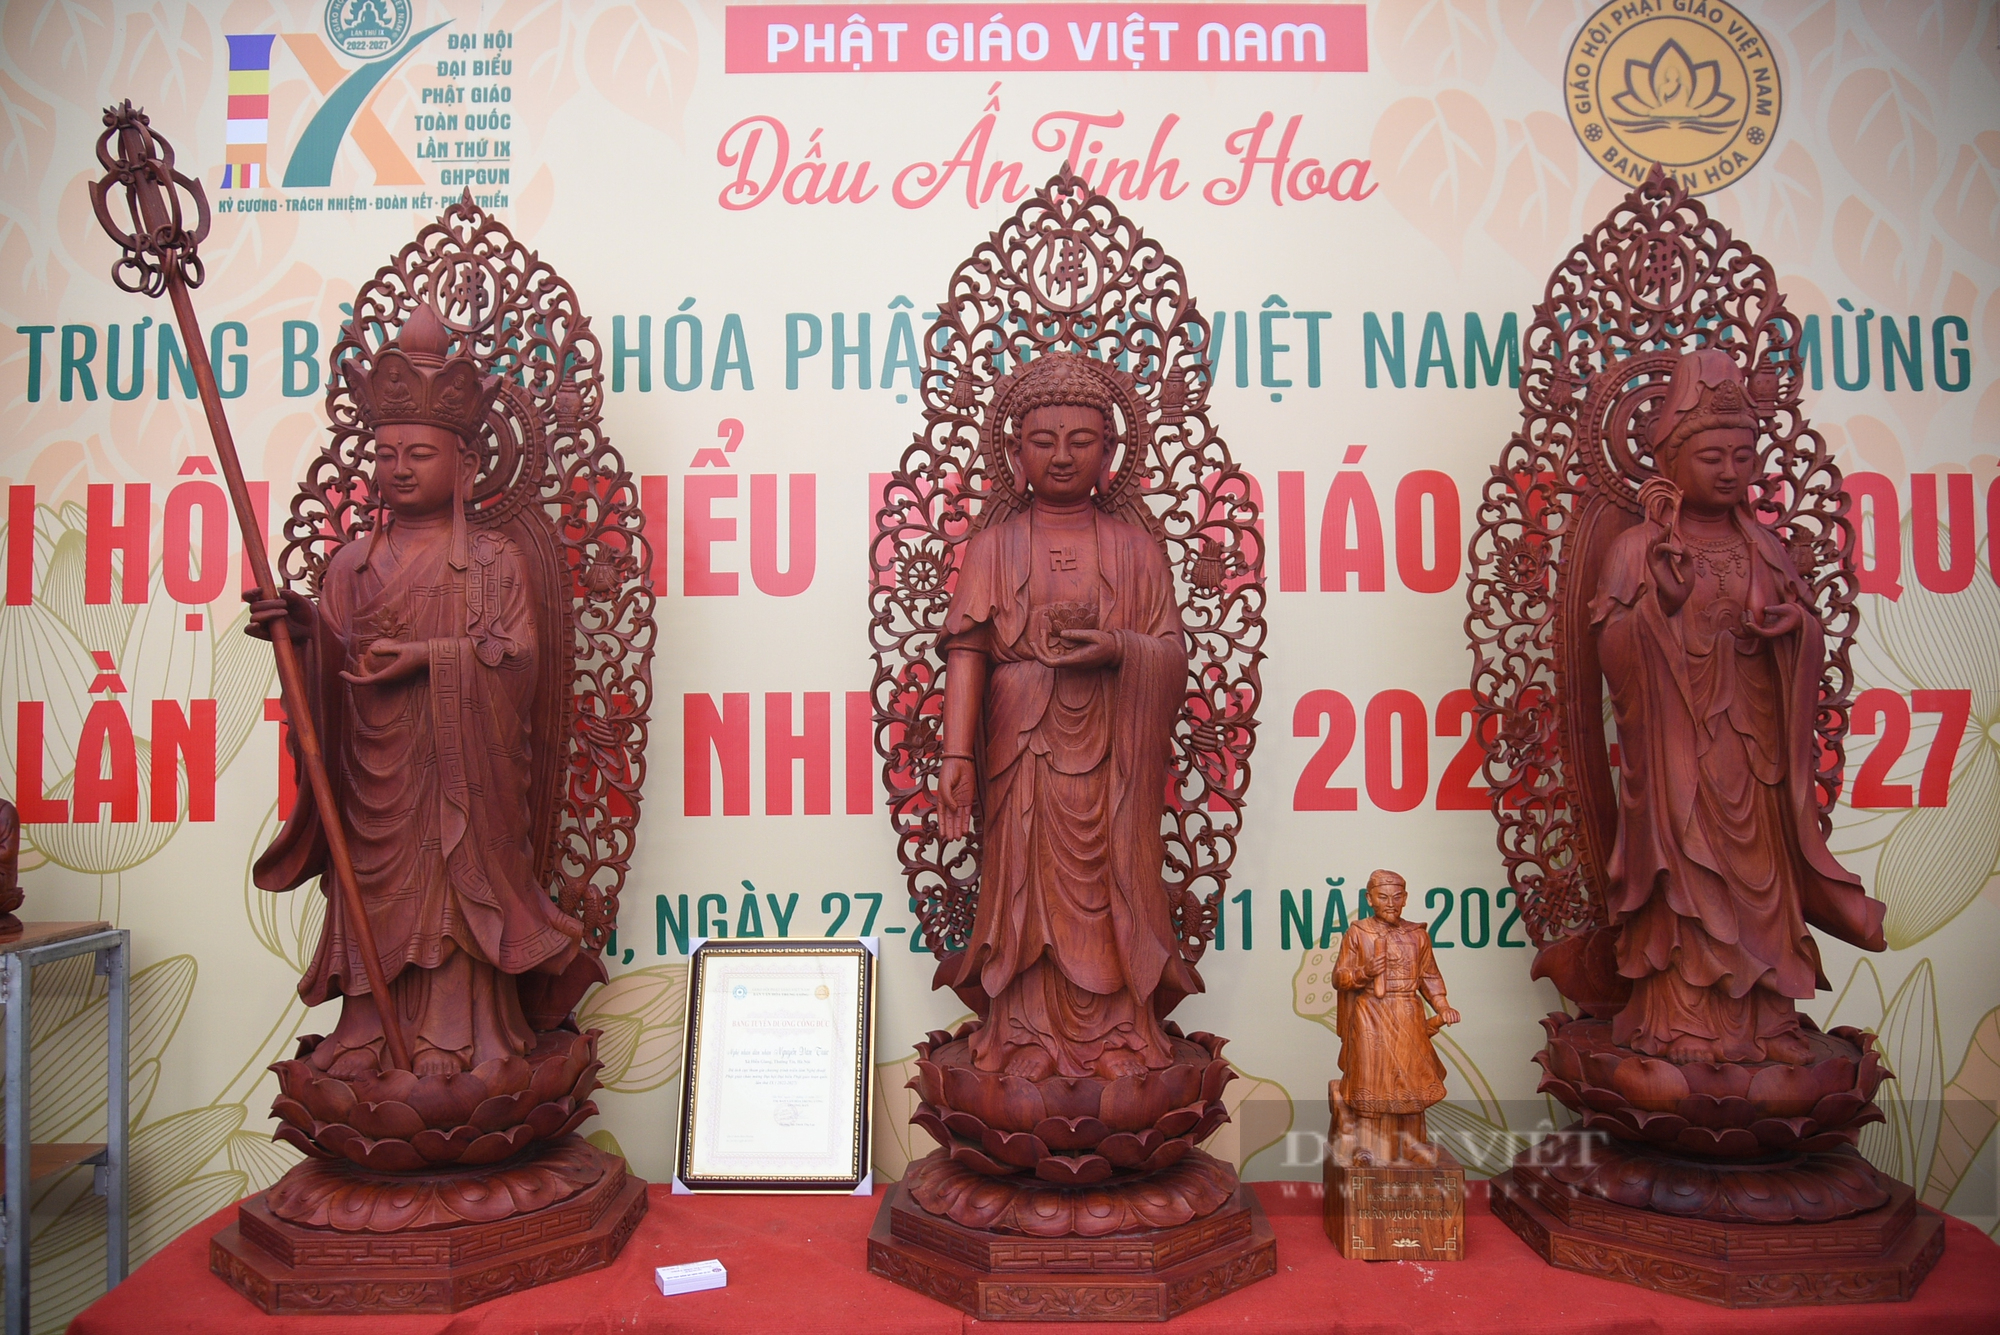 Ấn tượng về triển lãm Phật giáo Việt Nam-8